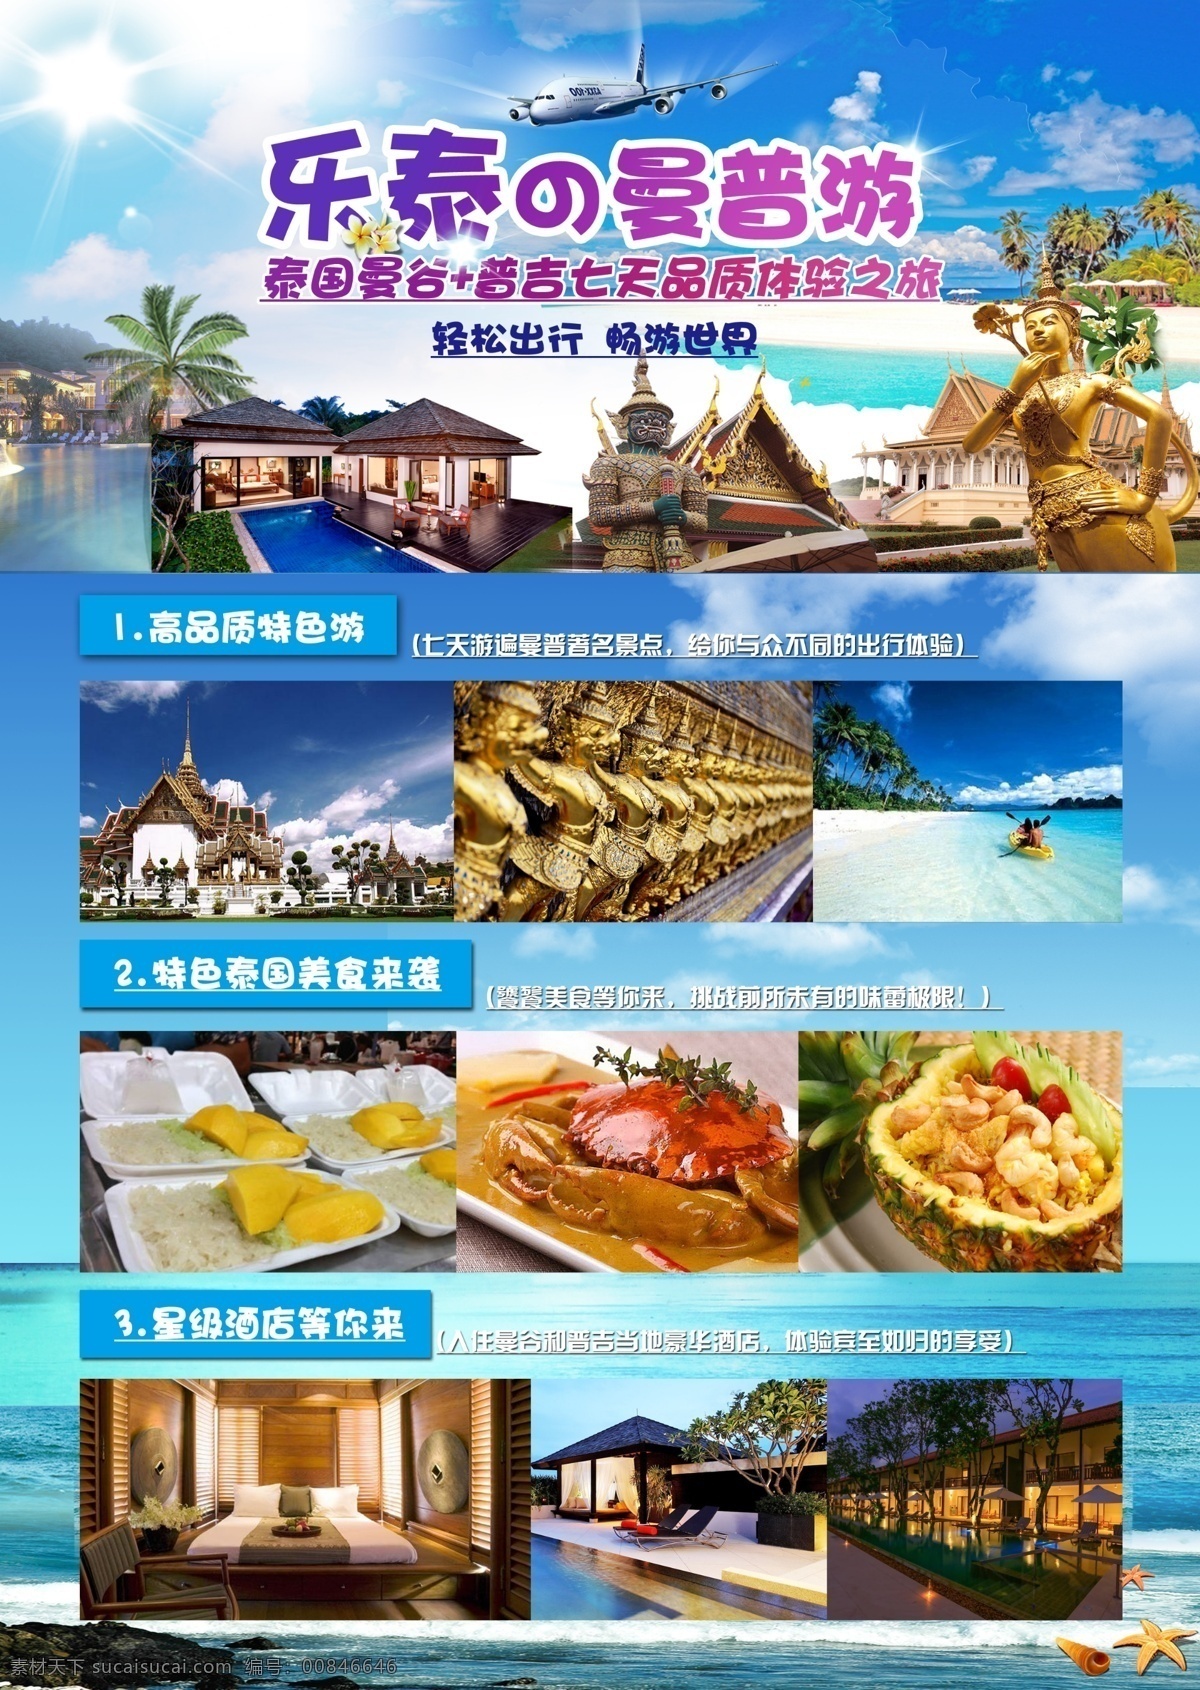 乐泰 海岸线 旅游 海报 泰国 套餐 酒店 海岛 菠萝饭 芒果糯米饭 海边 沙滩 寺庙